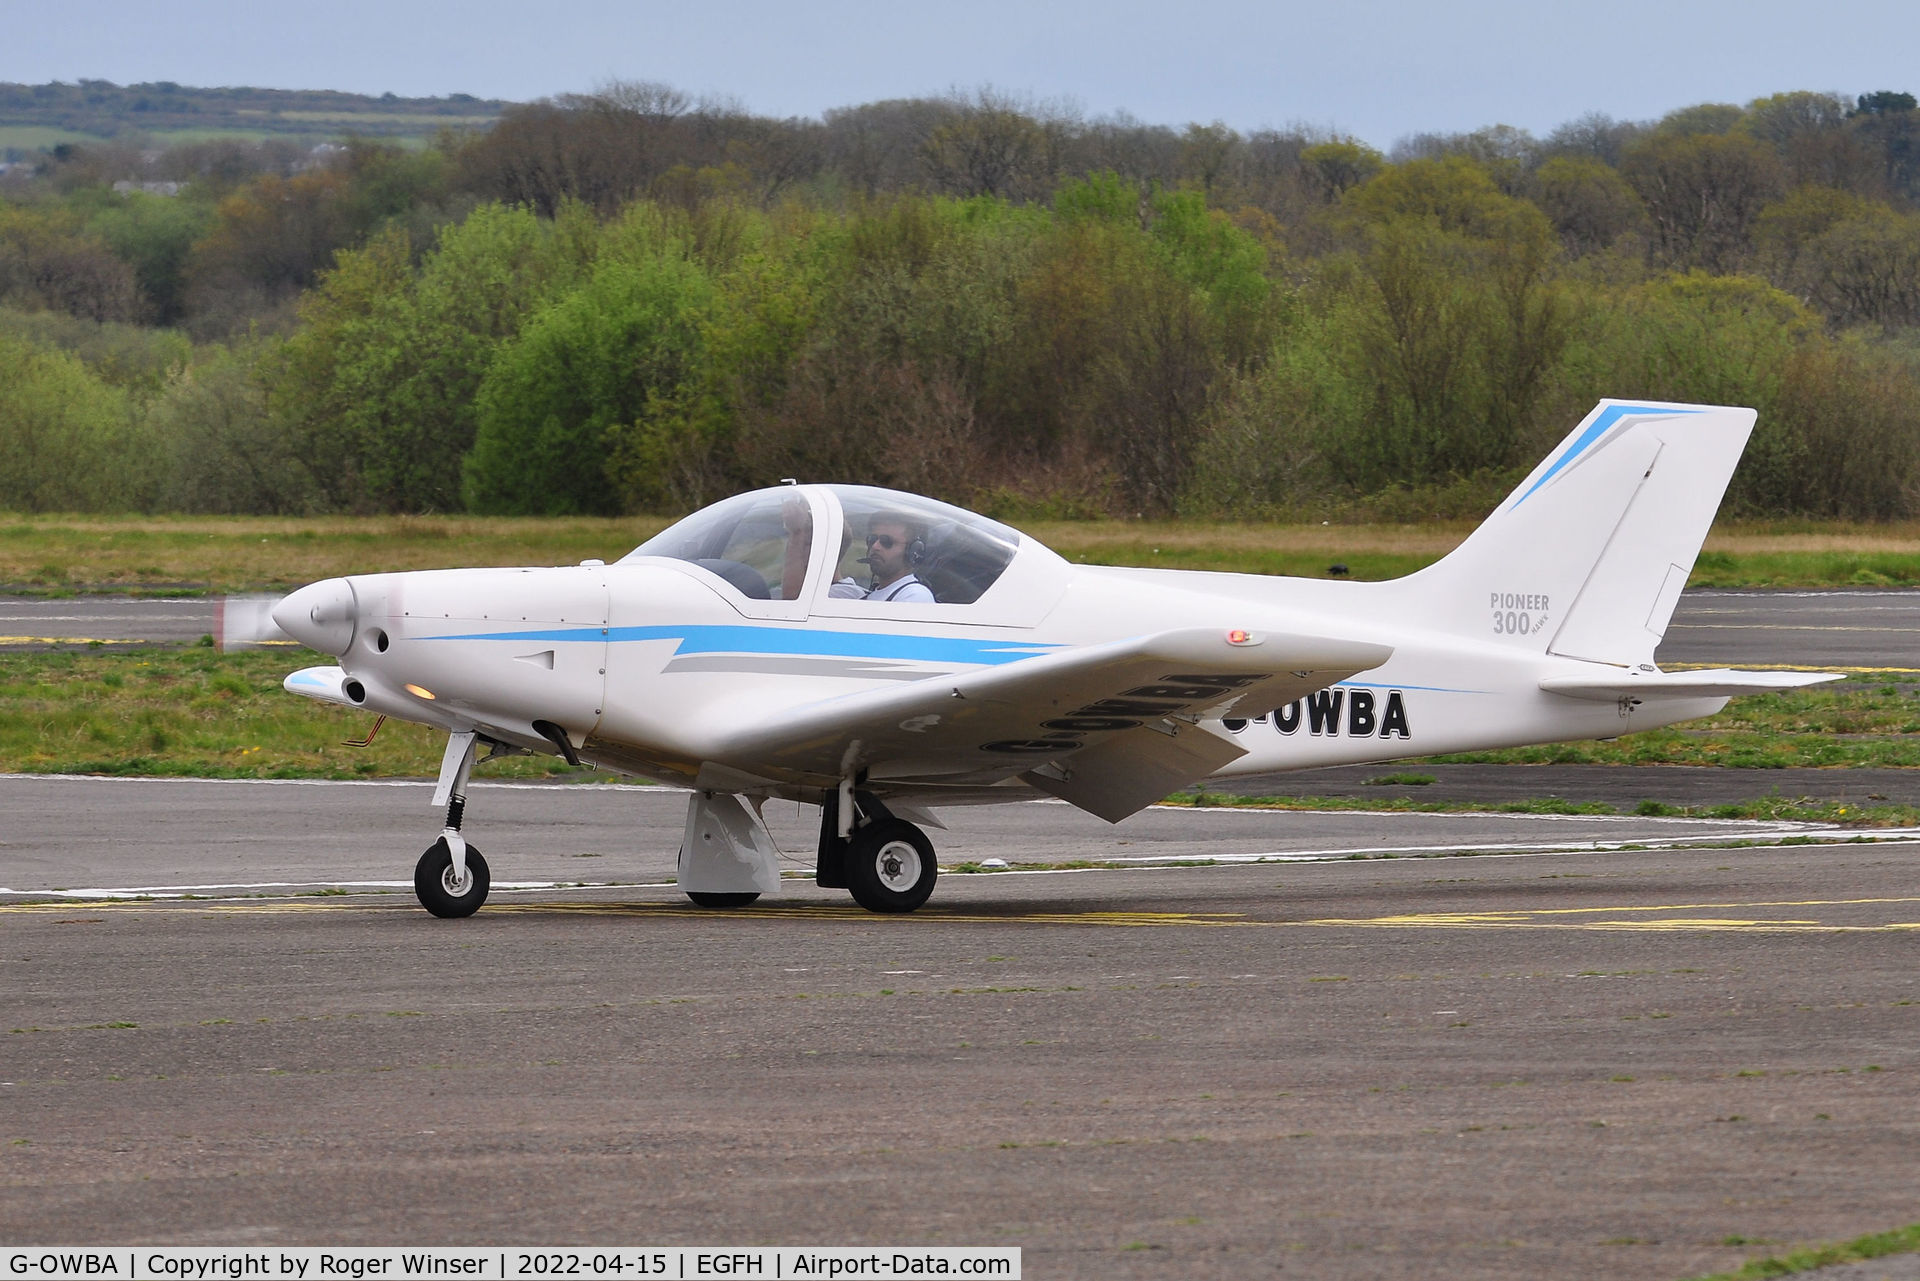 G-OWBA, 2013 Alpi Aviation Pioneer 300 C/N LAA 330-15155, Visiting Pioneer 300.